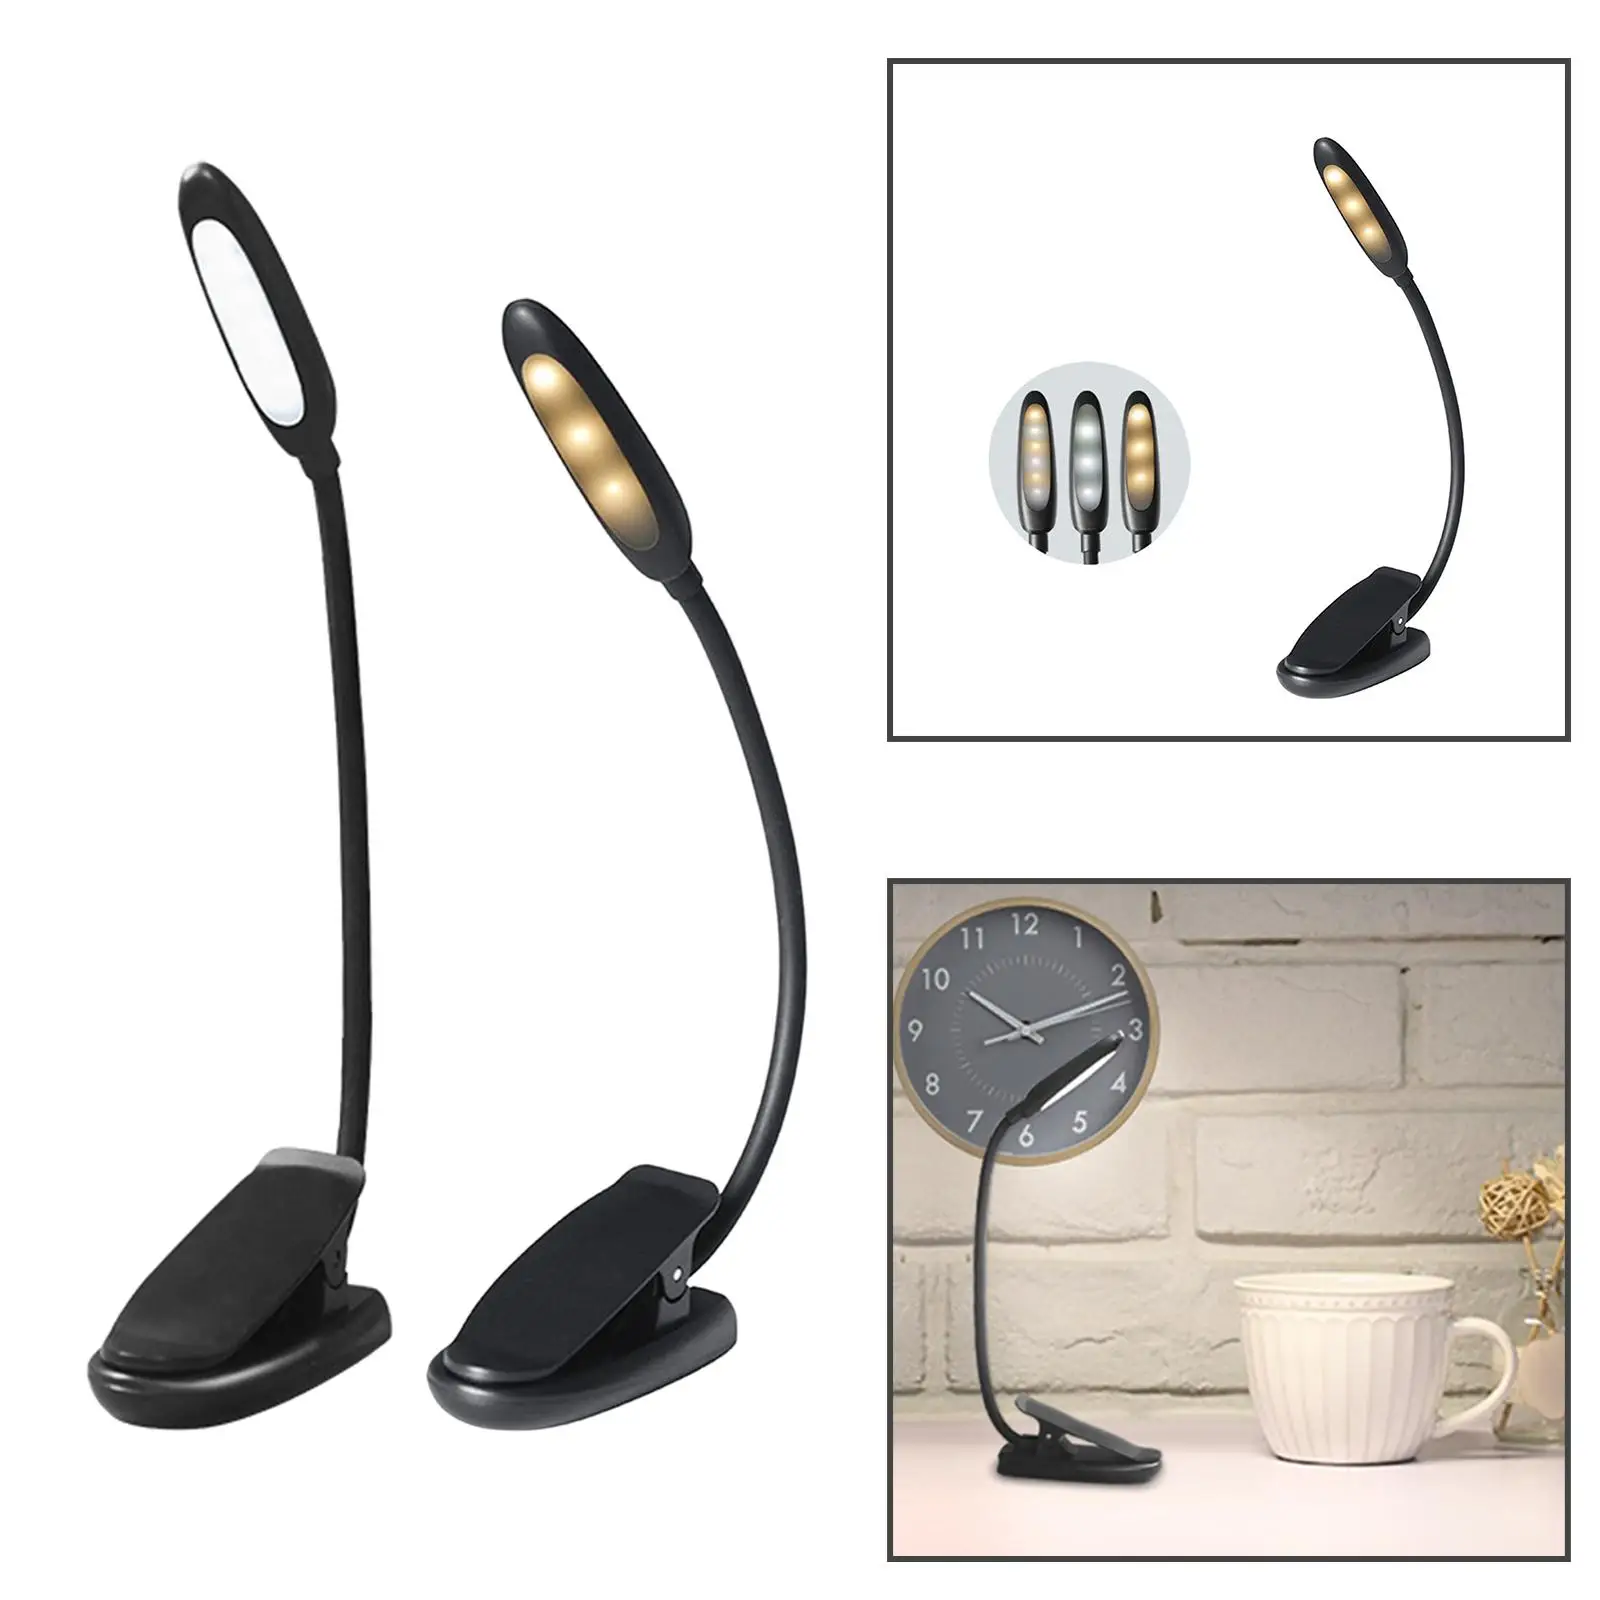 Portable LED Desk Lamp USB Rechargeable Eye Protection Night Light Reading Light Clip On Light for Living Room Bedroom Home Dorm